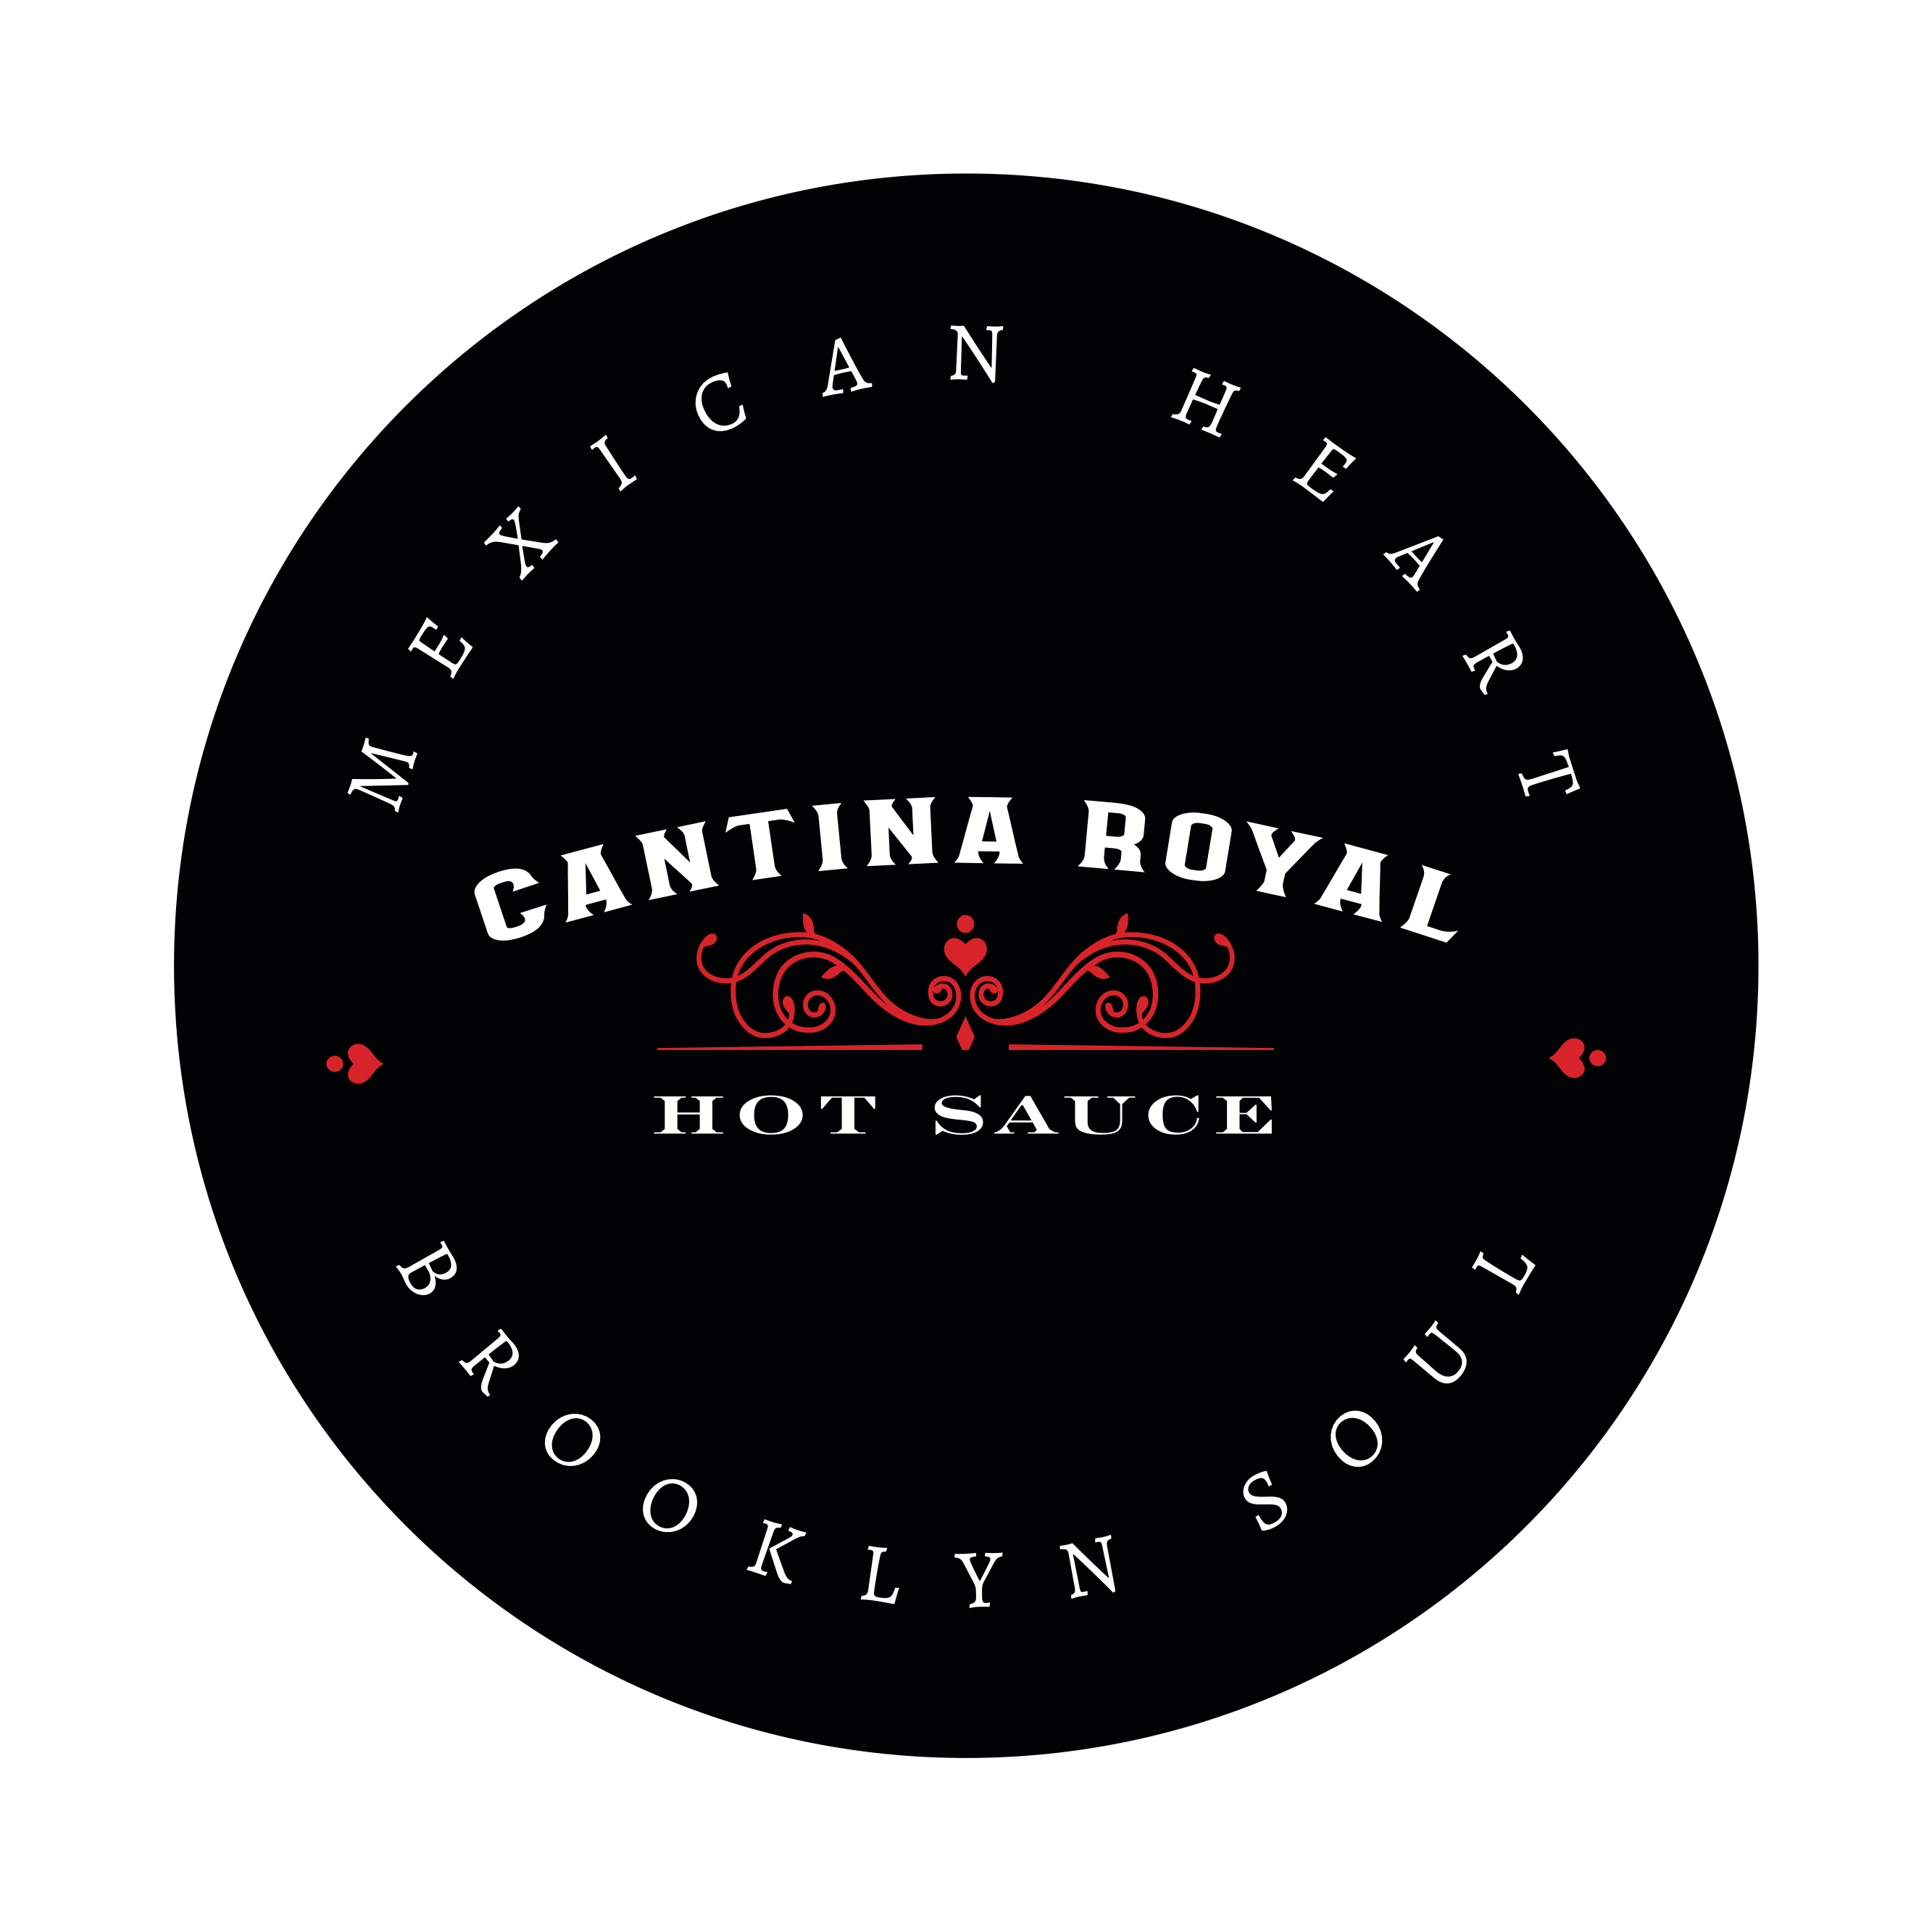 Tomasa Hot Sauce - Featured Hot Ones Season 15 – Cantina Royal Hot Sauce